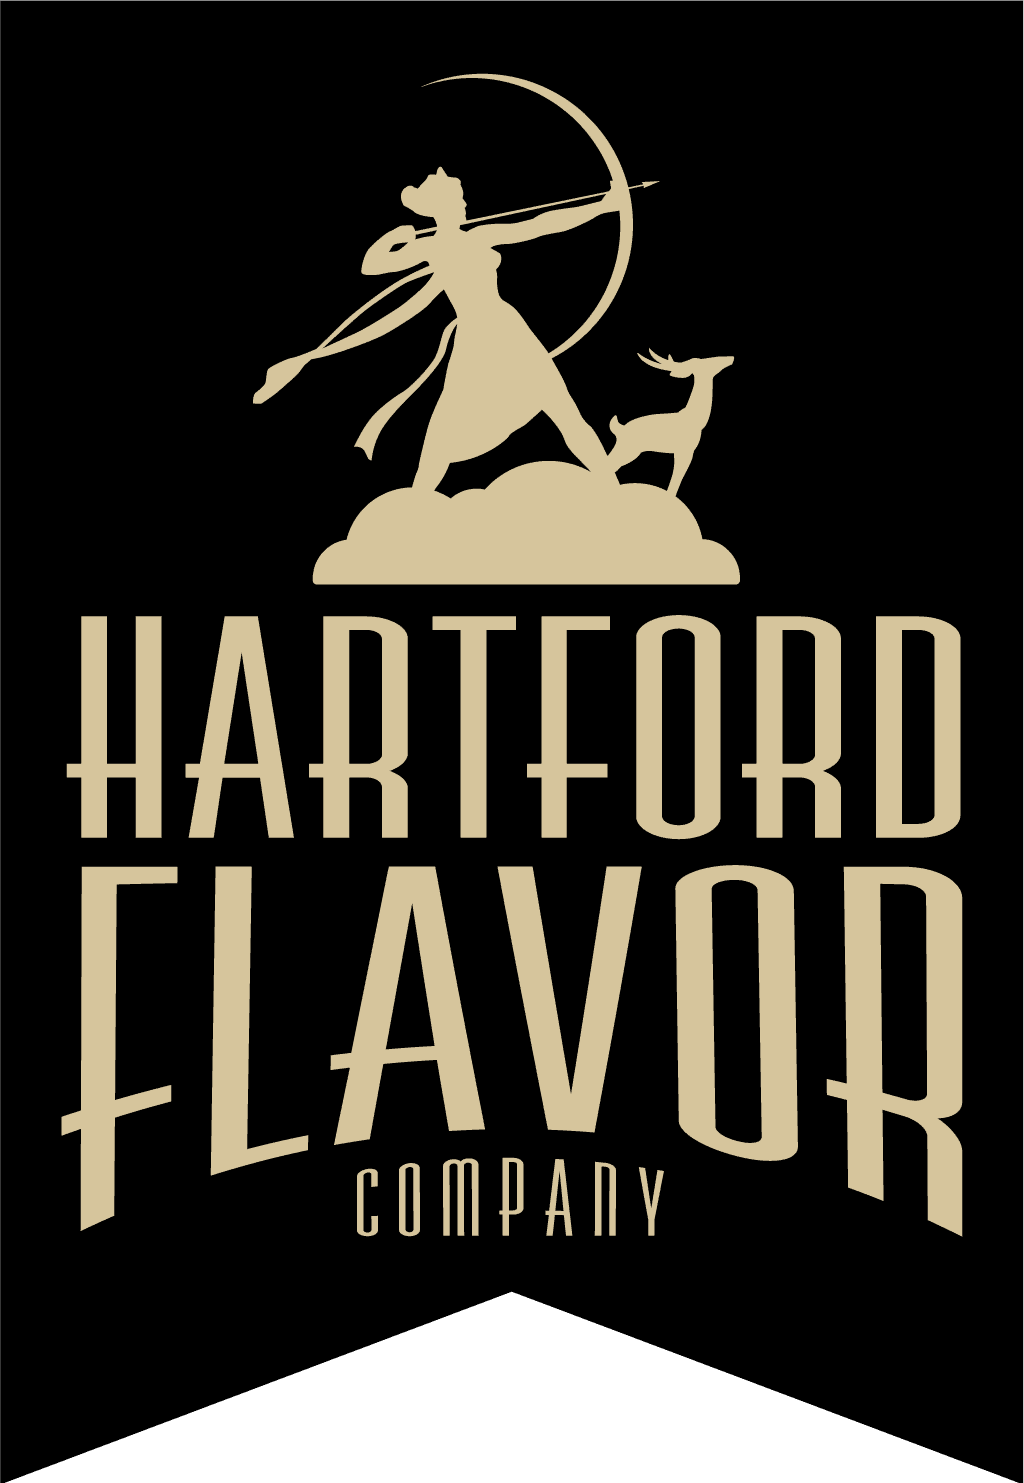 Hartford Flavor Company